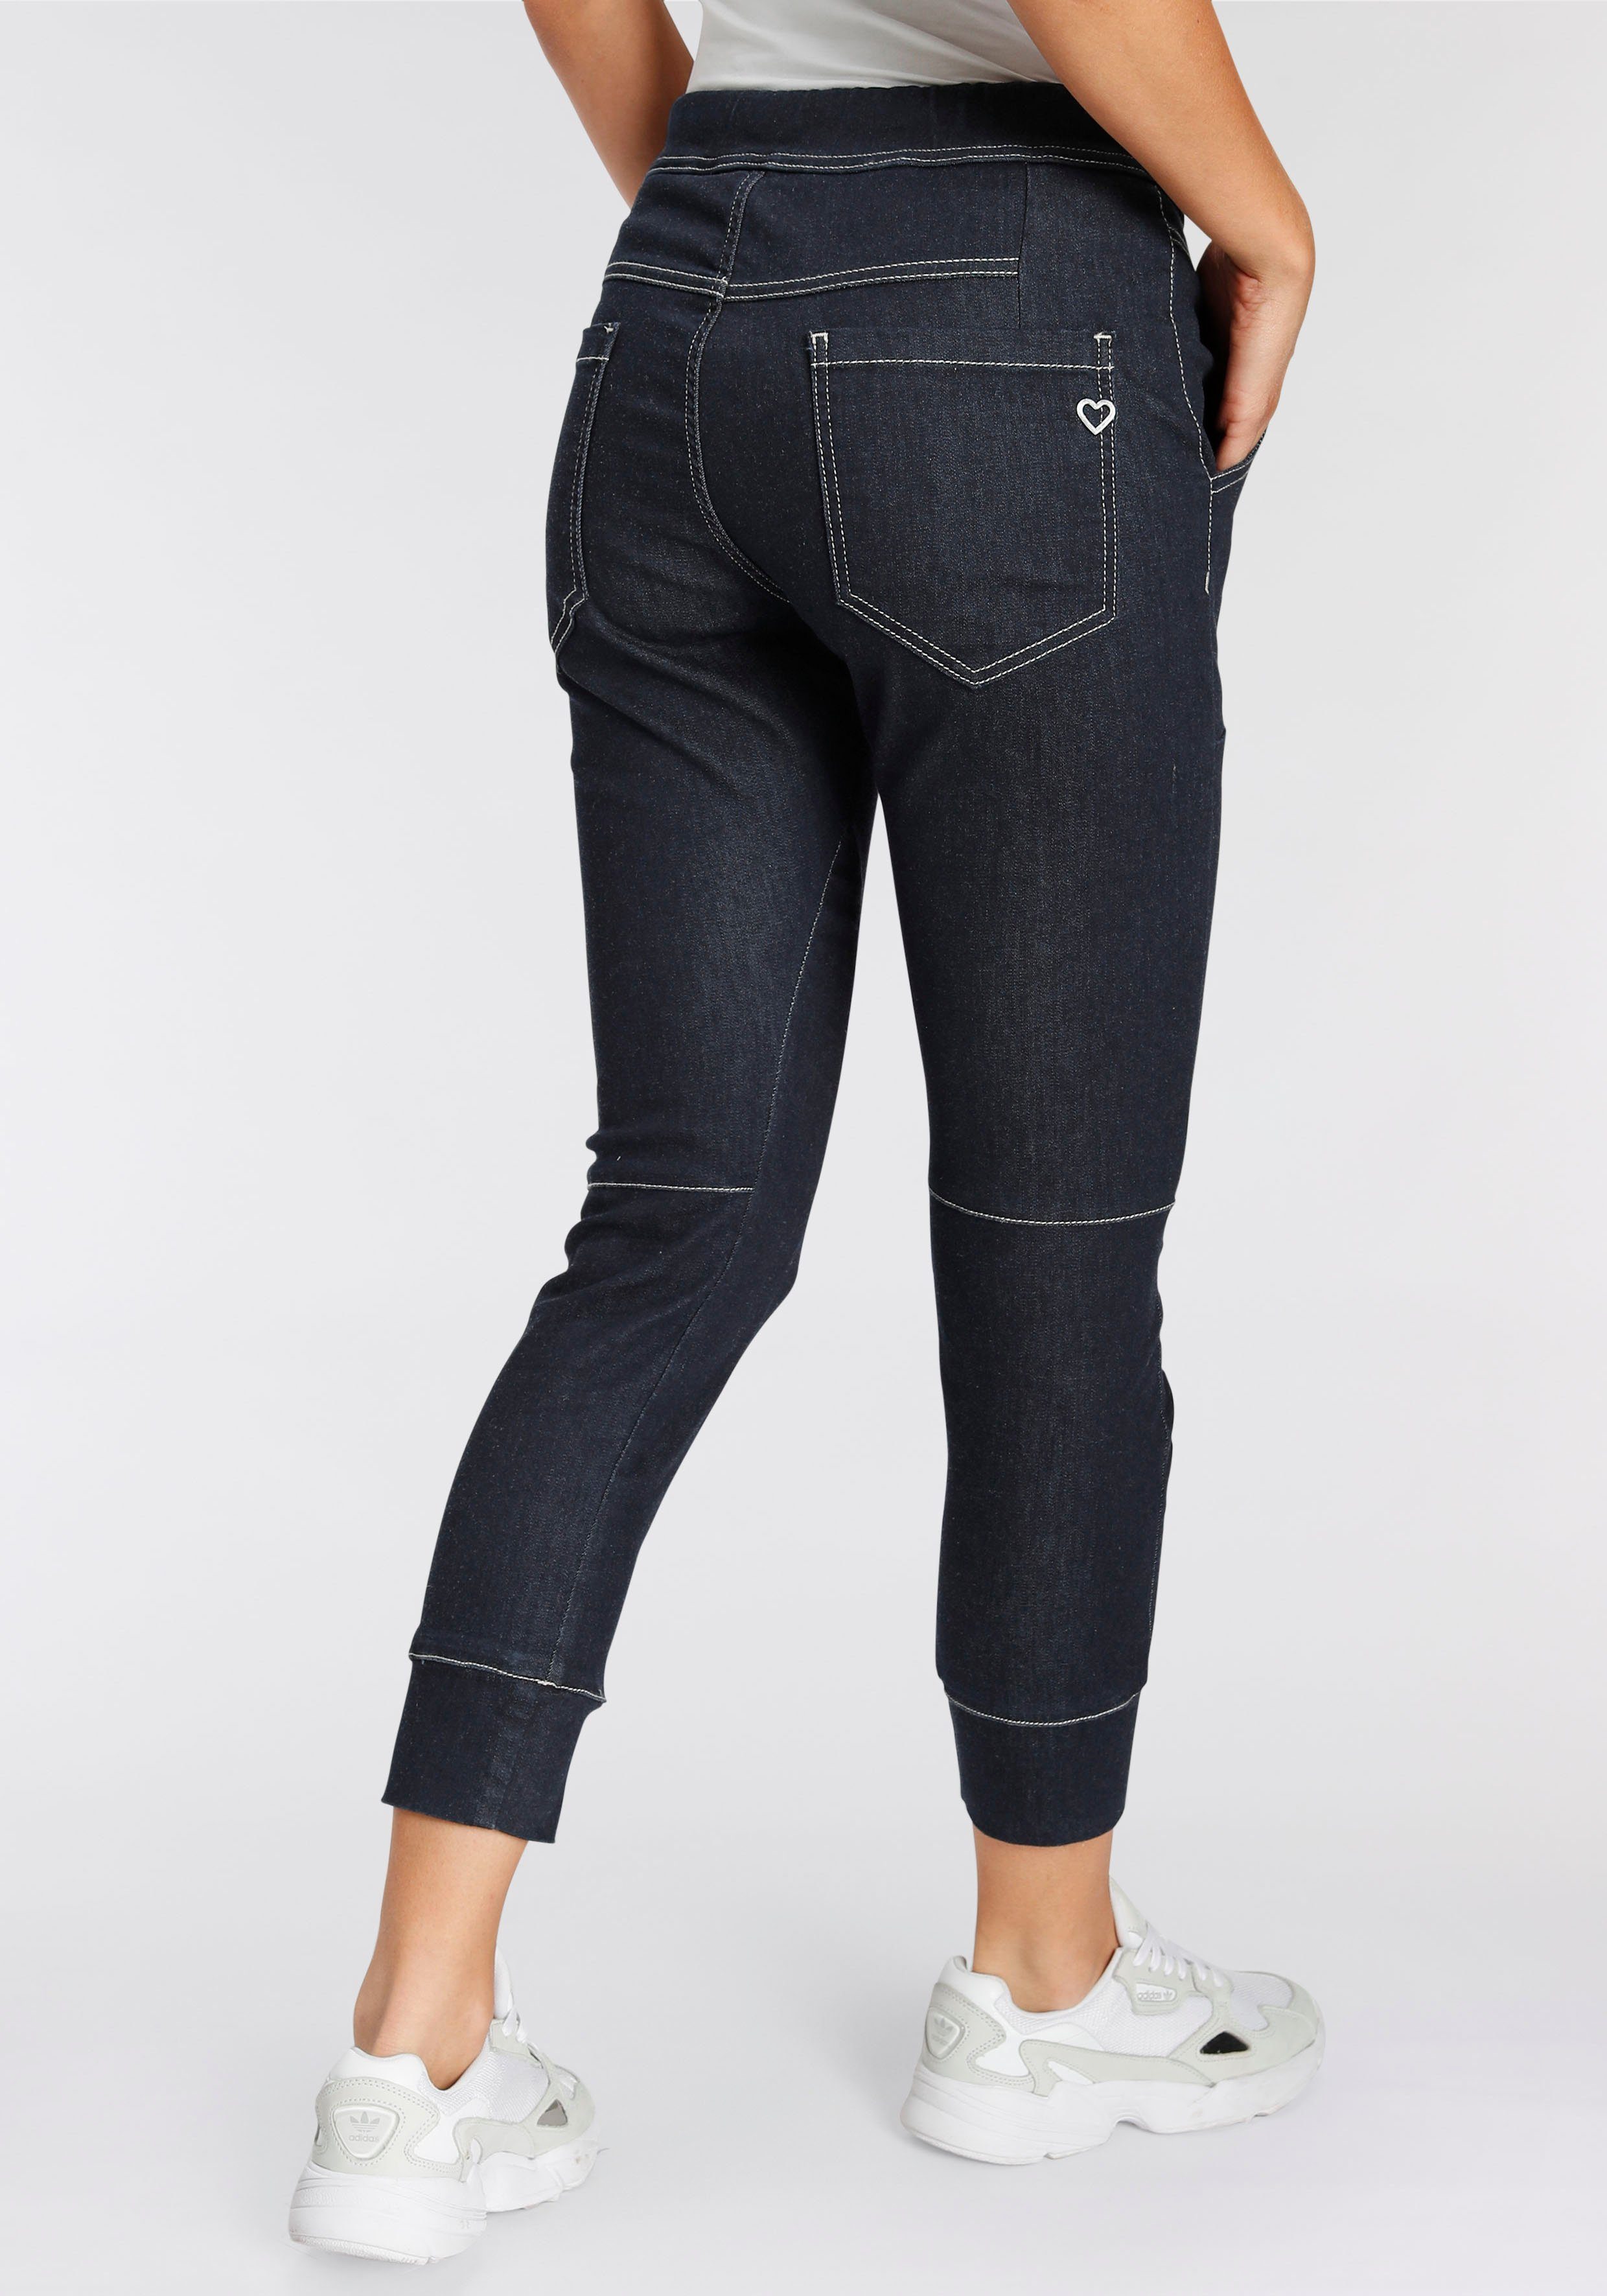 Please Jeans Jogger Pants PL51G im Relax-Fit mit praktischem Gummizug-Bund